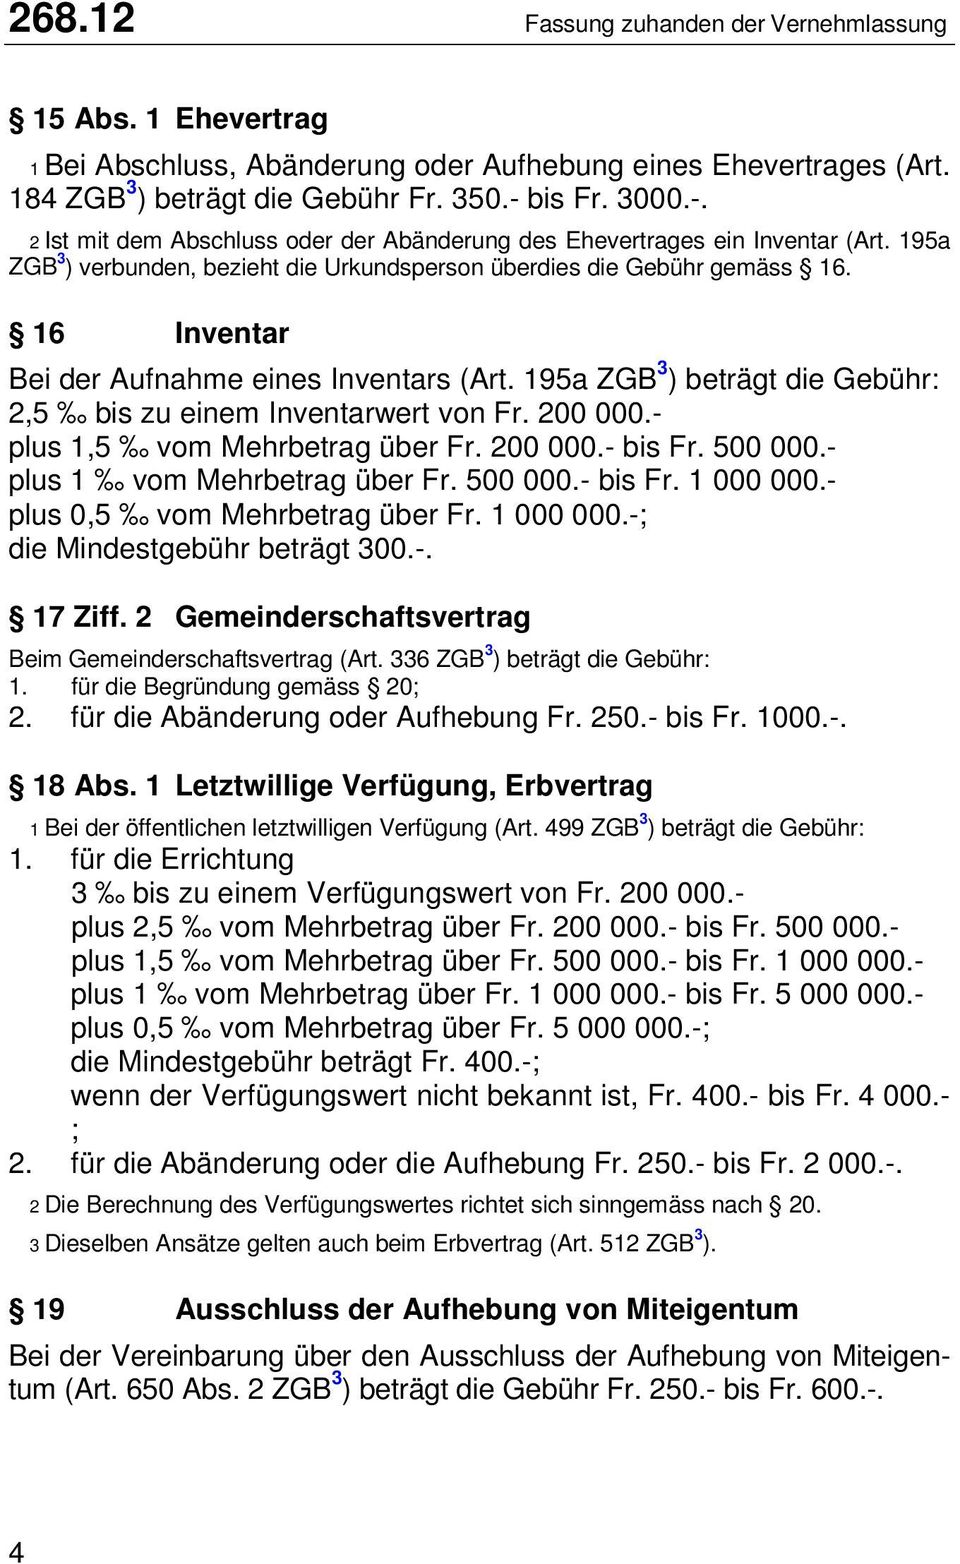 16 Inventar Bei der Aufnahme eines Inventars (Art. 195a ZGB 3 ) beträgt die Gebühr: 2,5 bis zu einem Inventarwert von Fr. 200 000.- plus 1,5 vom Mehrbetrag über Fr. 200 000.- bis Fr. 500 000.